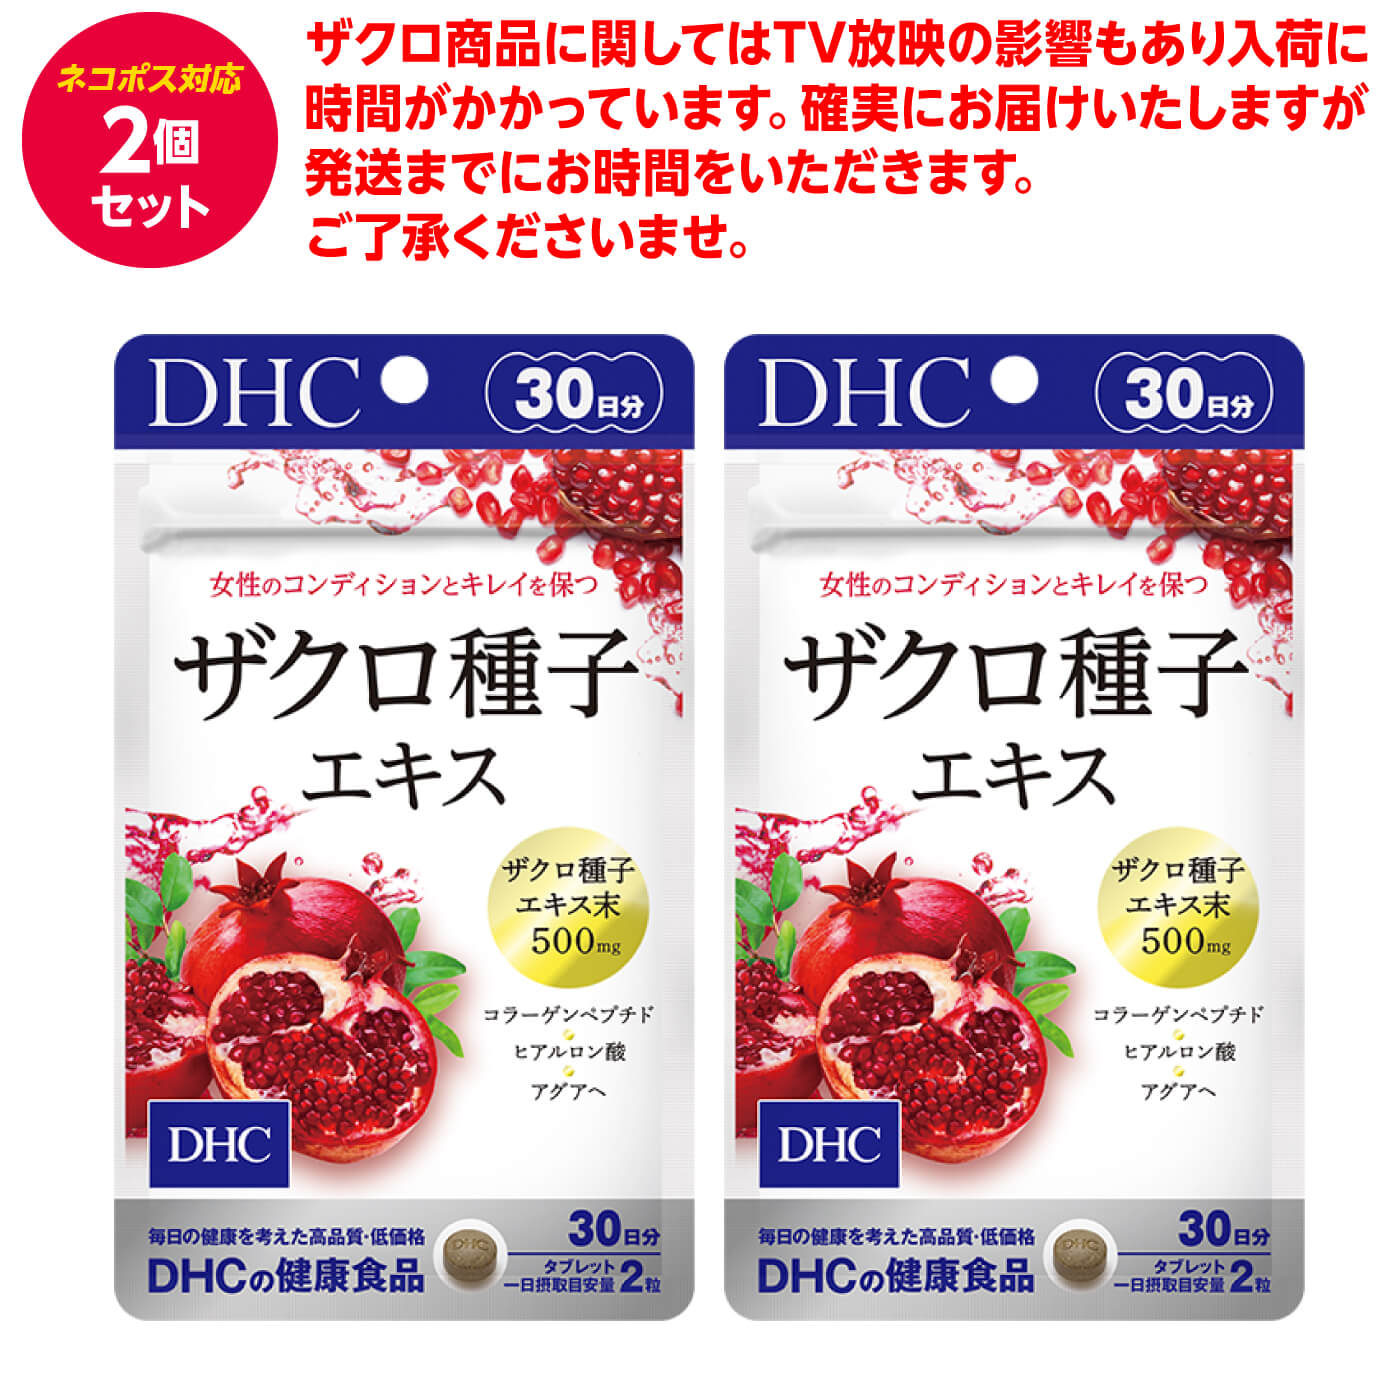 DHC ザクロ サプリ 種子エキス 30日分 まとめ買い コラーゲン ヒアルロン酸 エラグ酸 女性らしさ 美容 